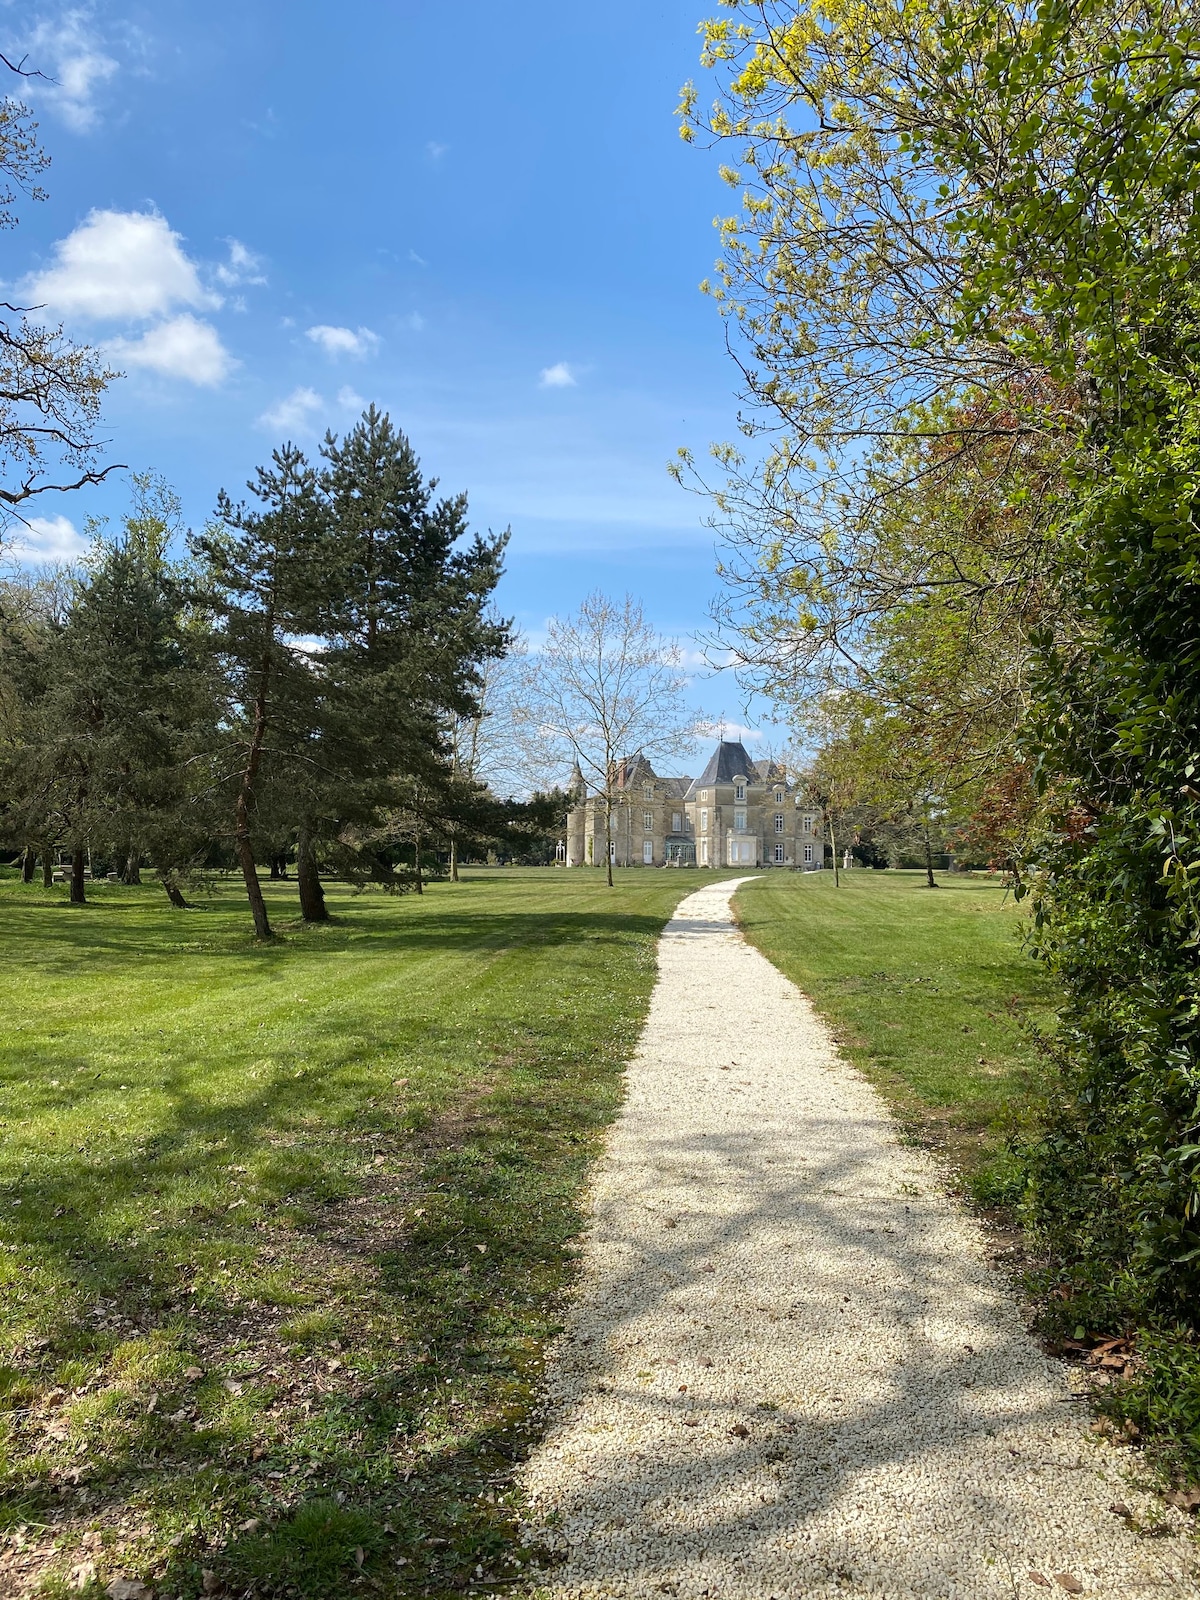 Château de St-Fulgent, Gite Le Parc